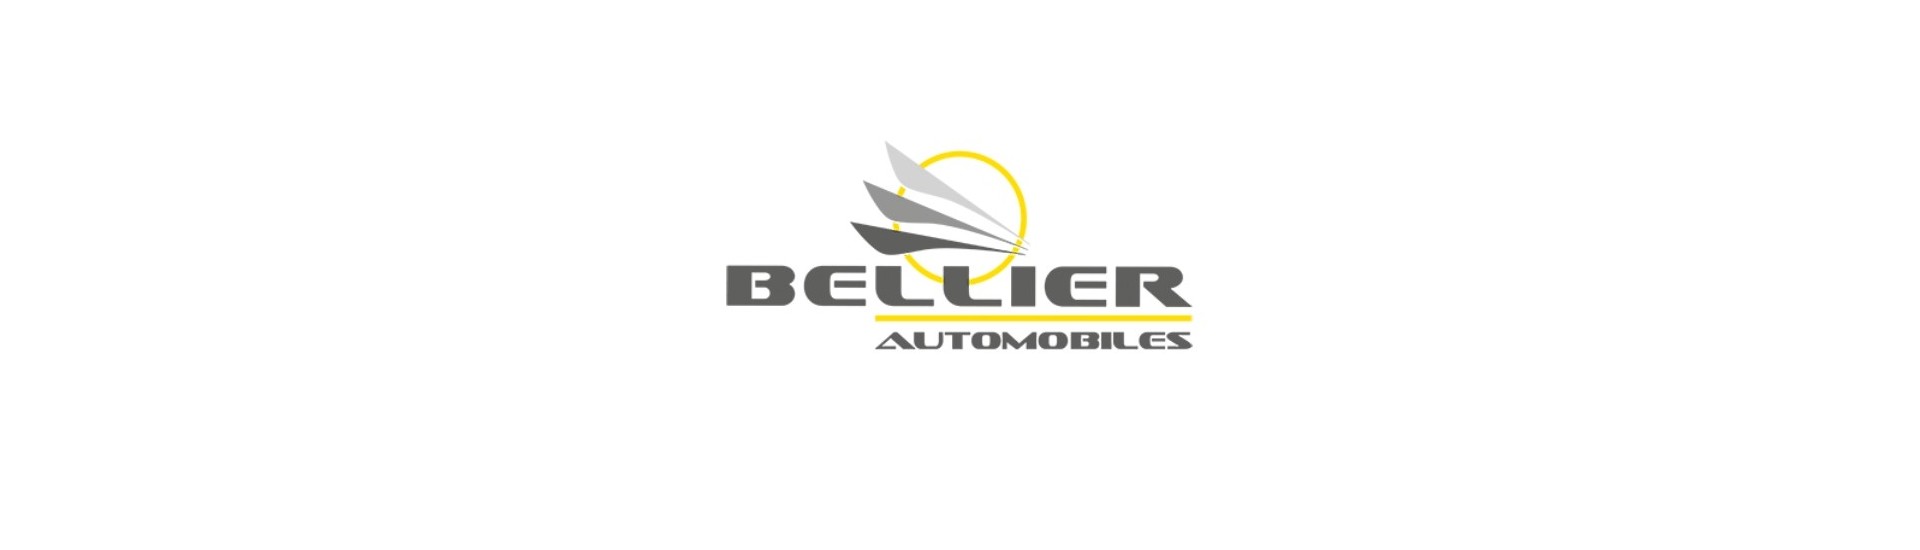 Ratti parhaaseen hintaan ilman ajokorttia Bellier